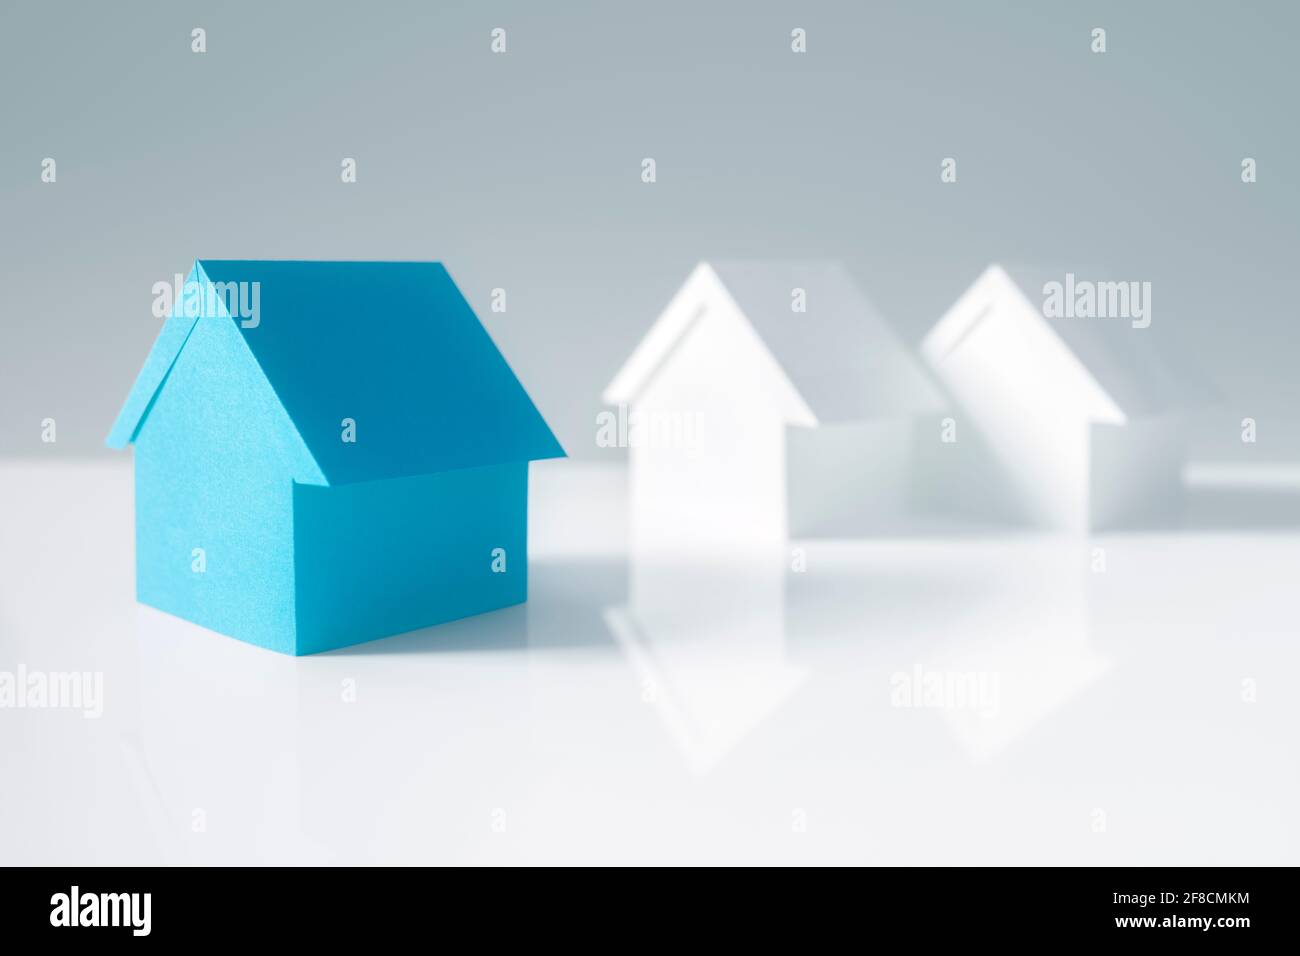 Recherche de biens immobiliers, maison ou nouvelle maison, maison en papier bleu se tenant debout Banque D'Images